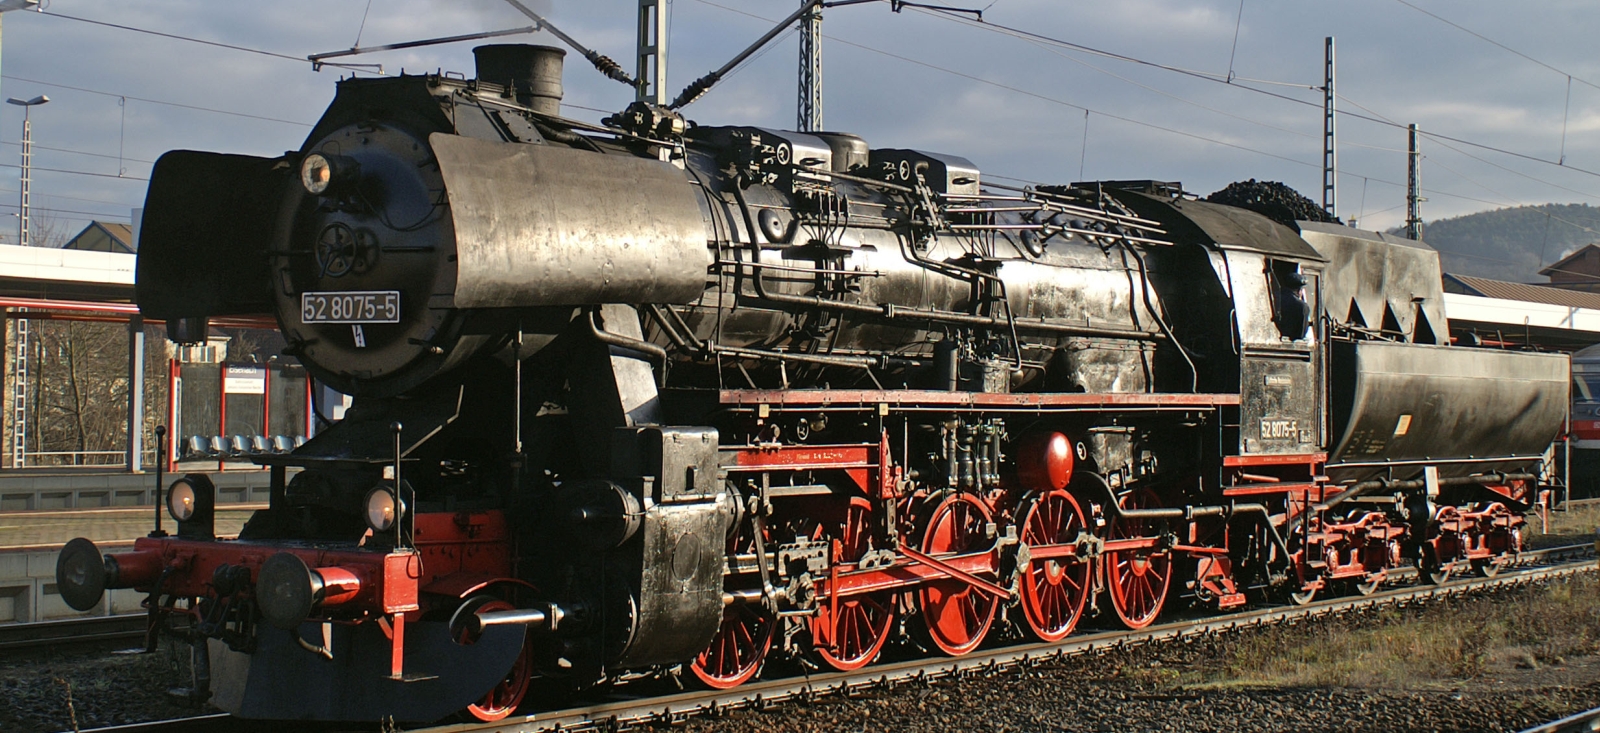 52 8075 in December 2006 in Eisenach